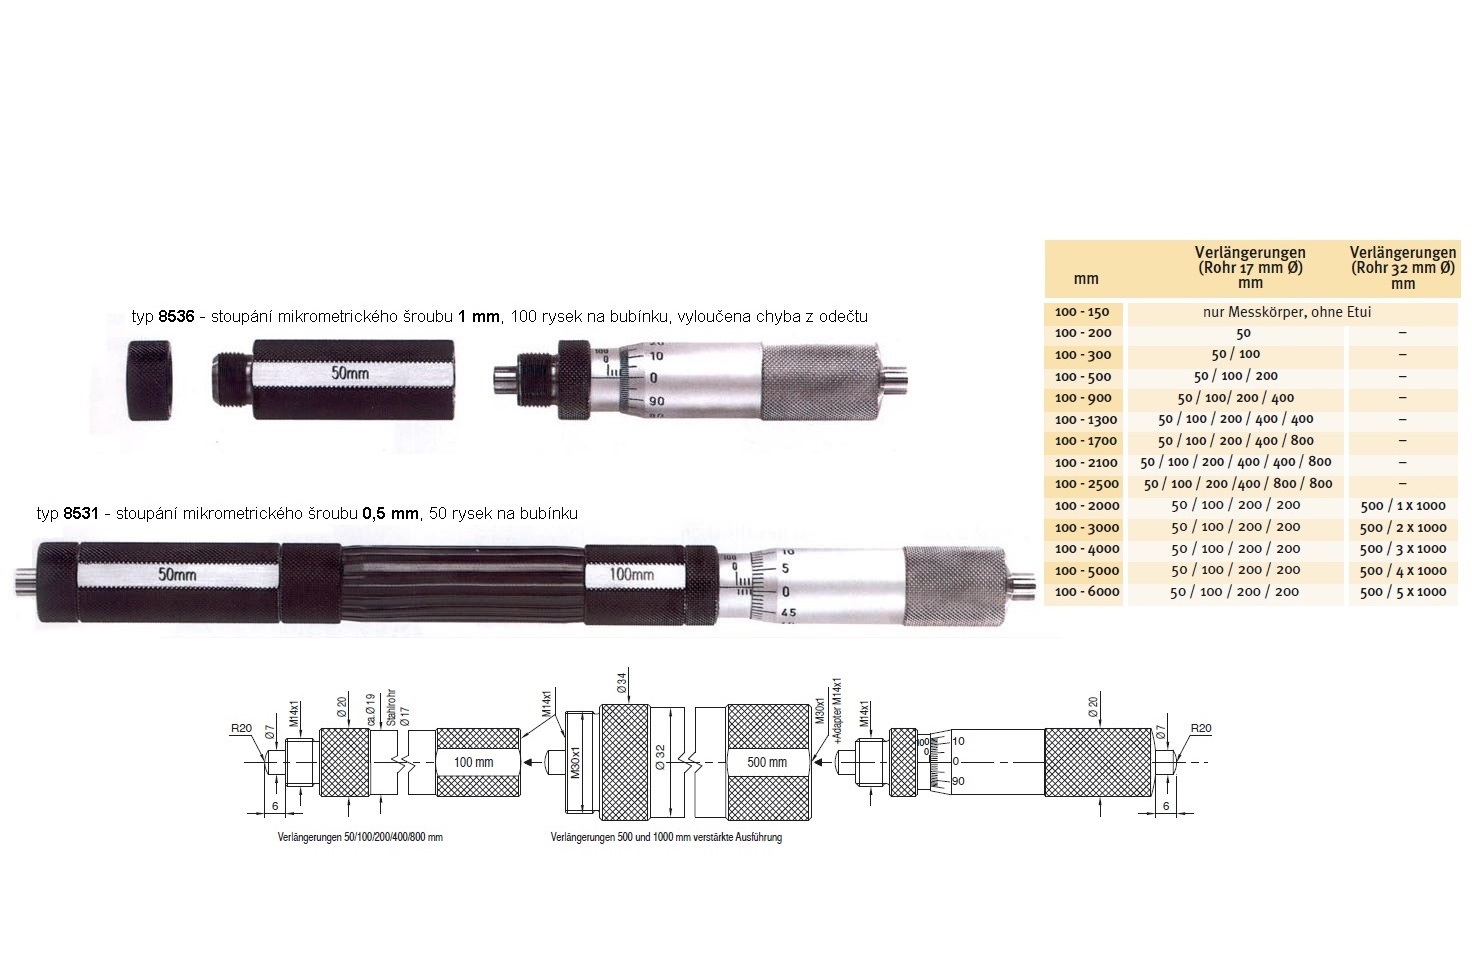 Mikrometrický odpich skládací HARTIG 100-900 mm, stoupání šroubu 1 mm, doteky tvrdokov